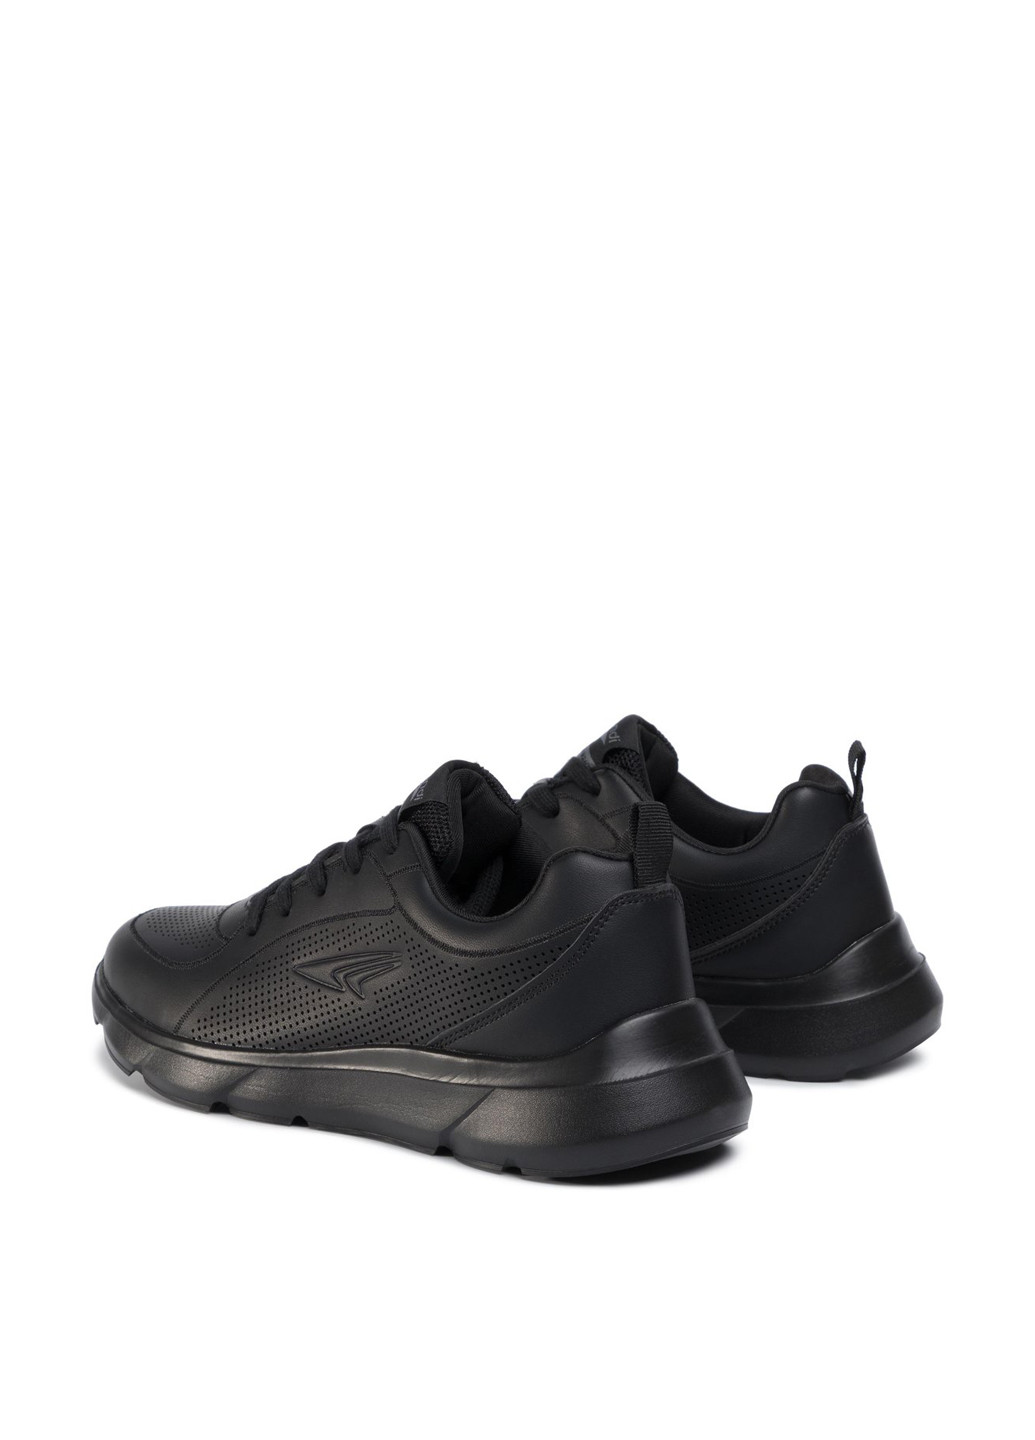 Черные демисезонные кросівки Sprandi MP07-91227-01